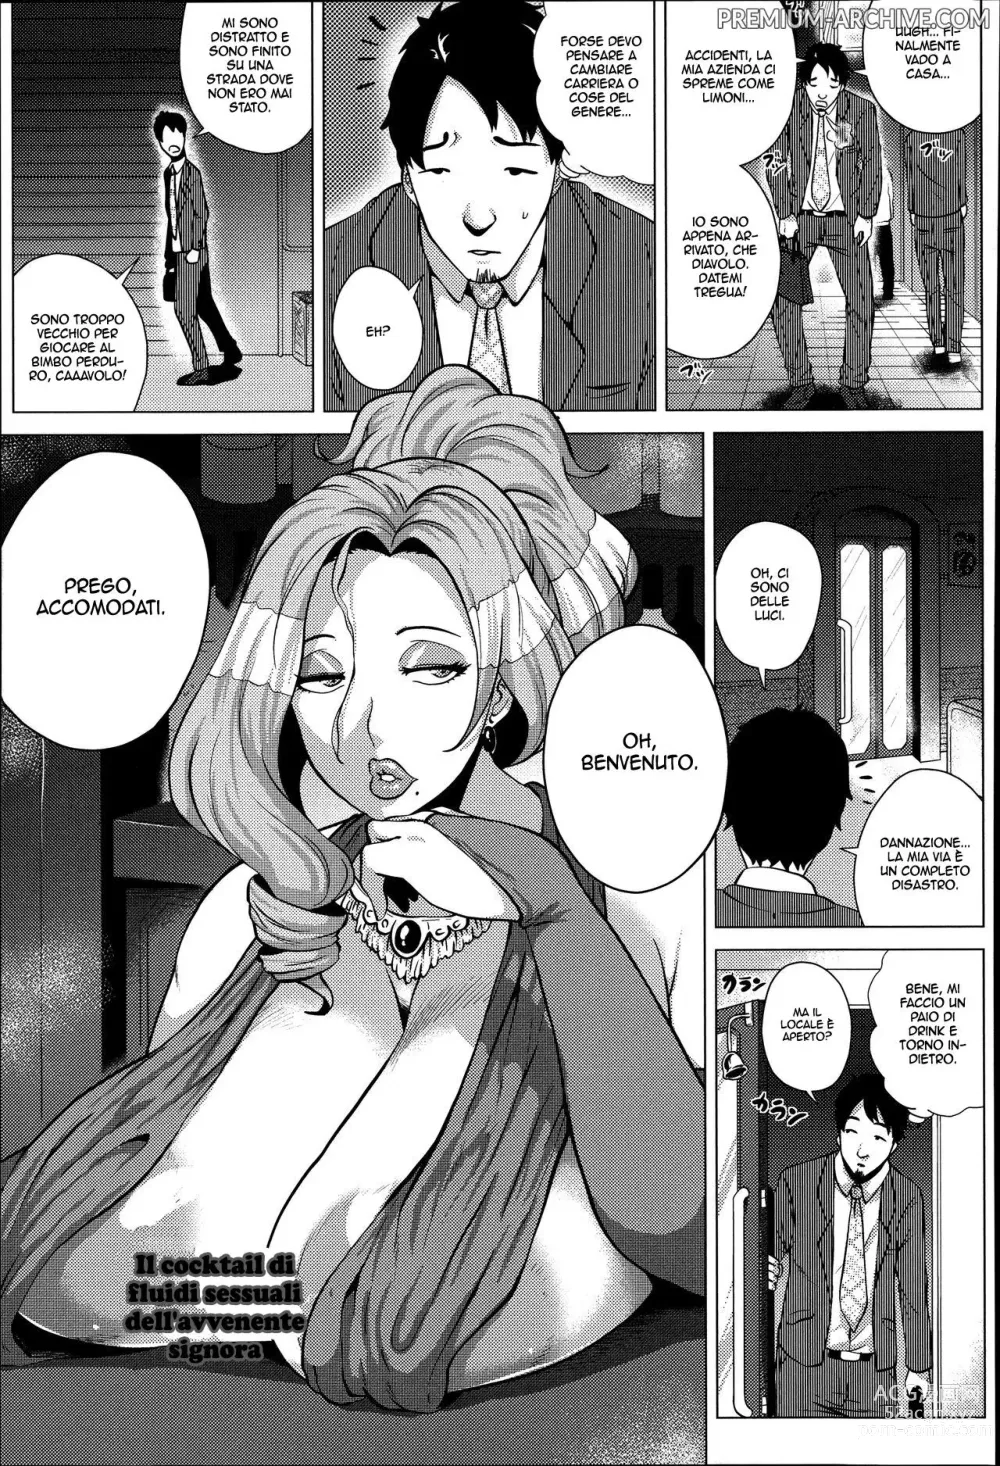 Page 1 of manga Il Cocktail di Fluidi Sessuali dell' Avvenente Signora